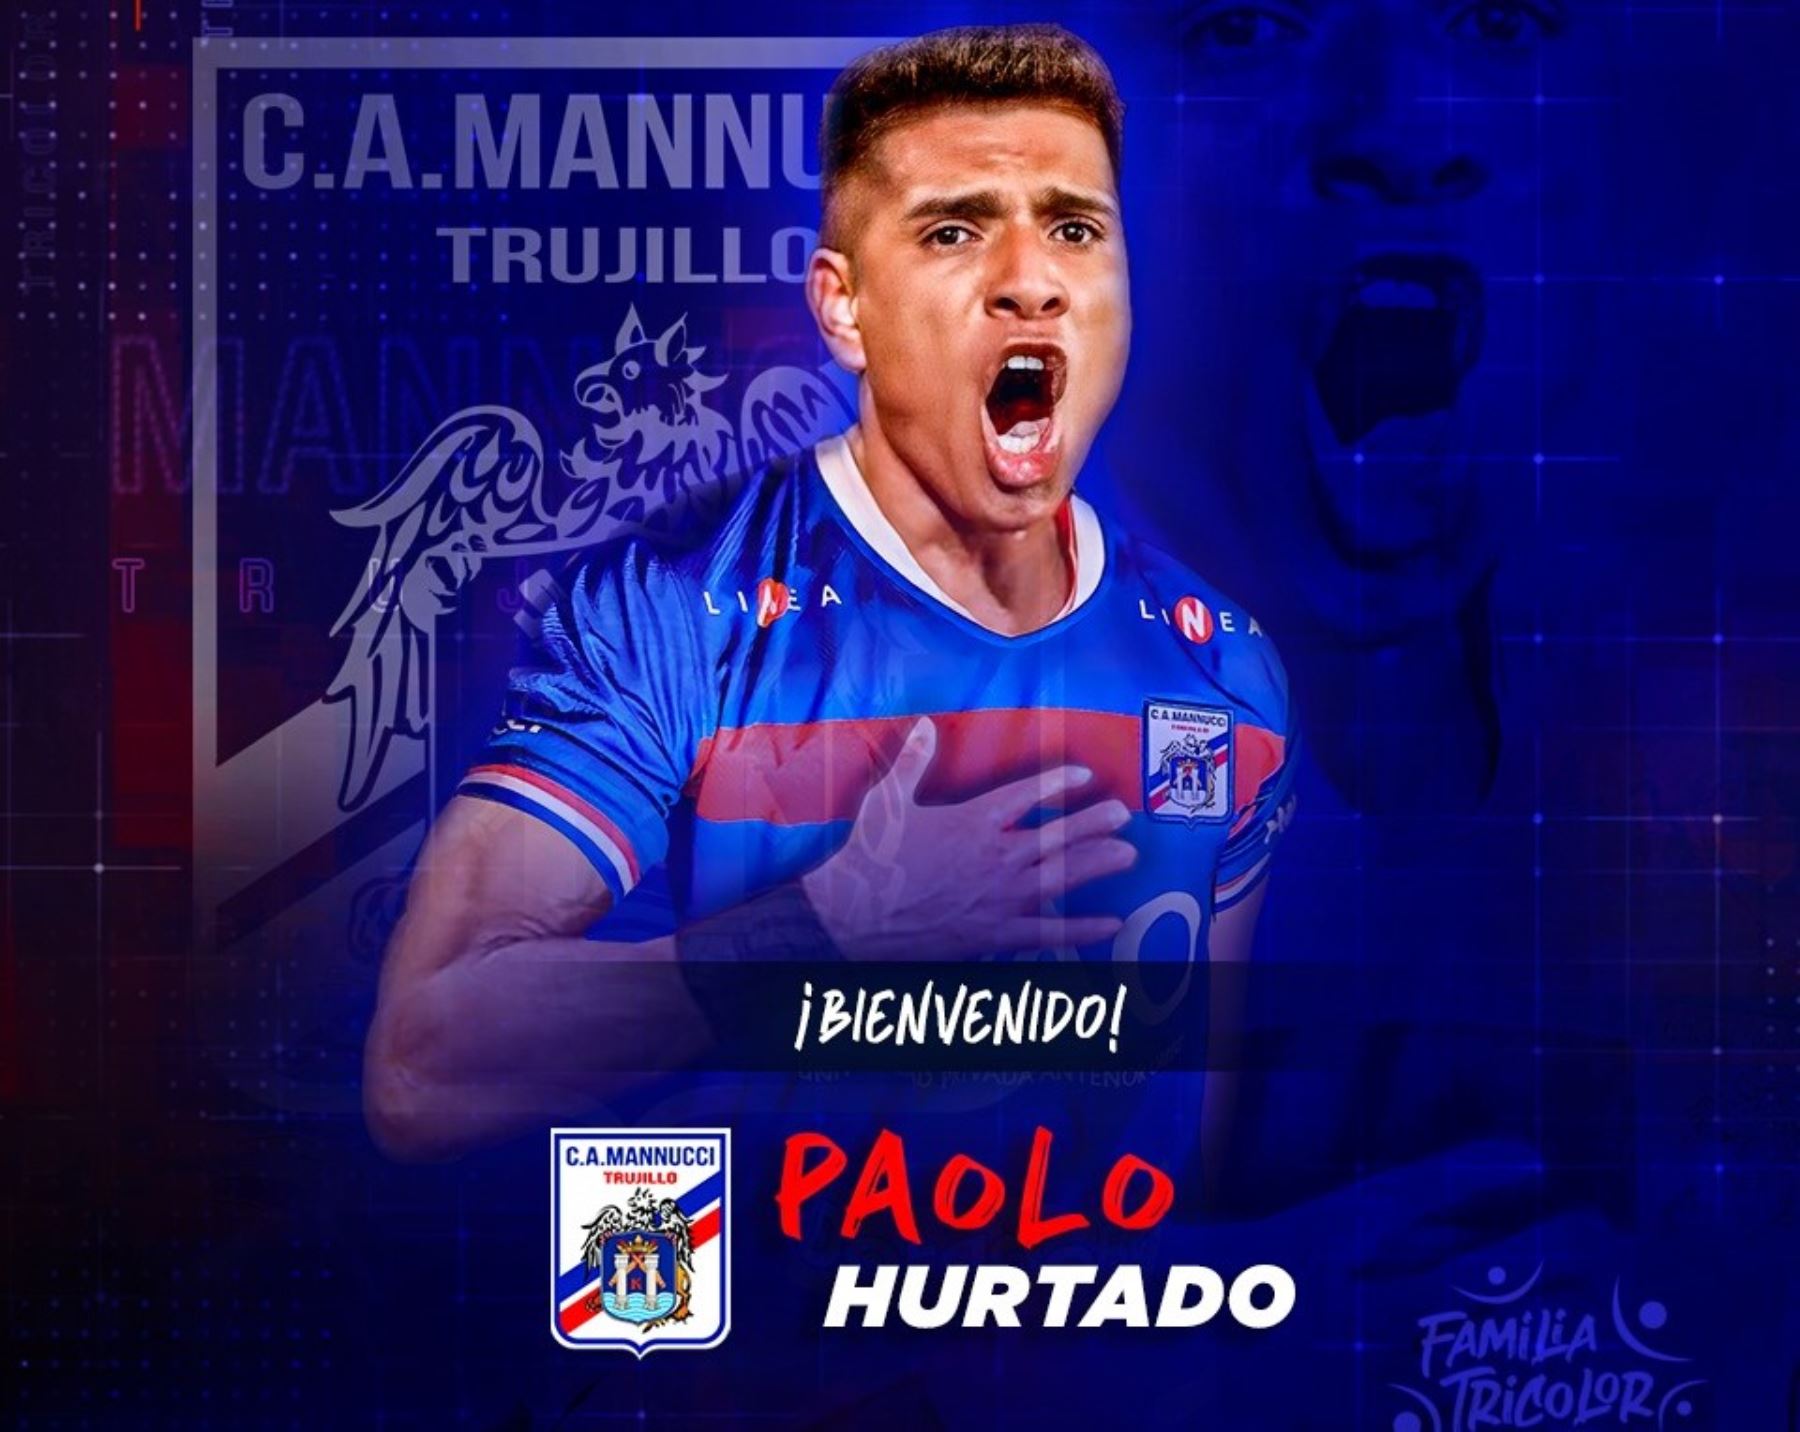 Paolo Hurtado continuará su carrera deportiva en Trujillo